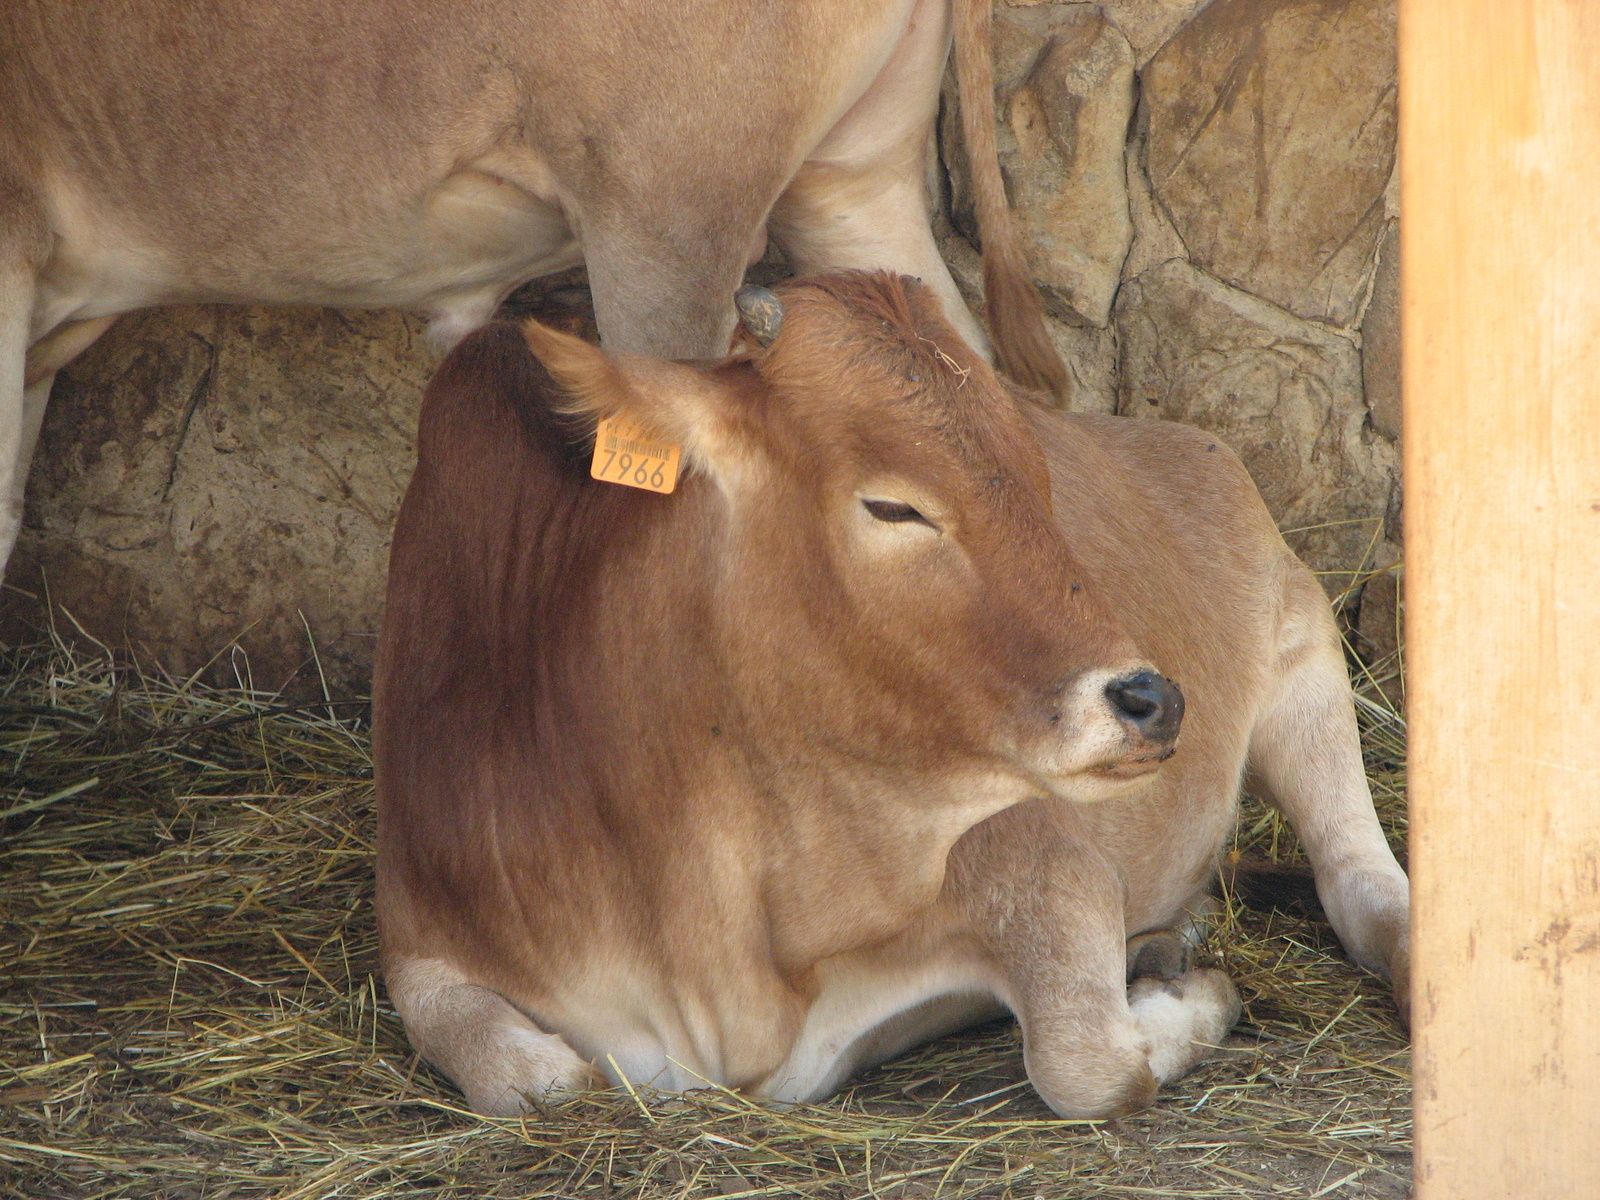 Baby Cow (calf) Zoo Algarve